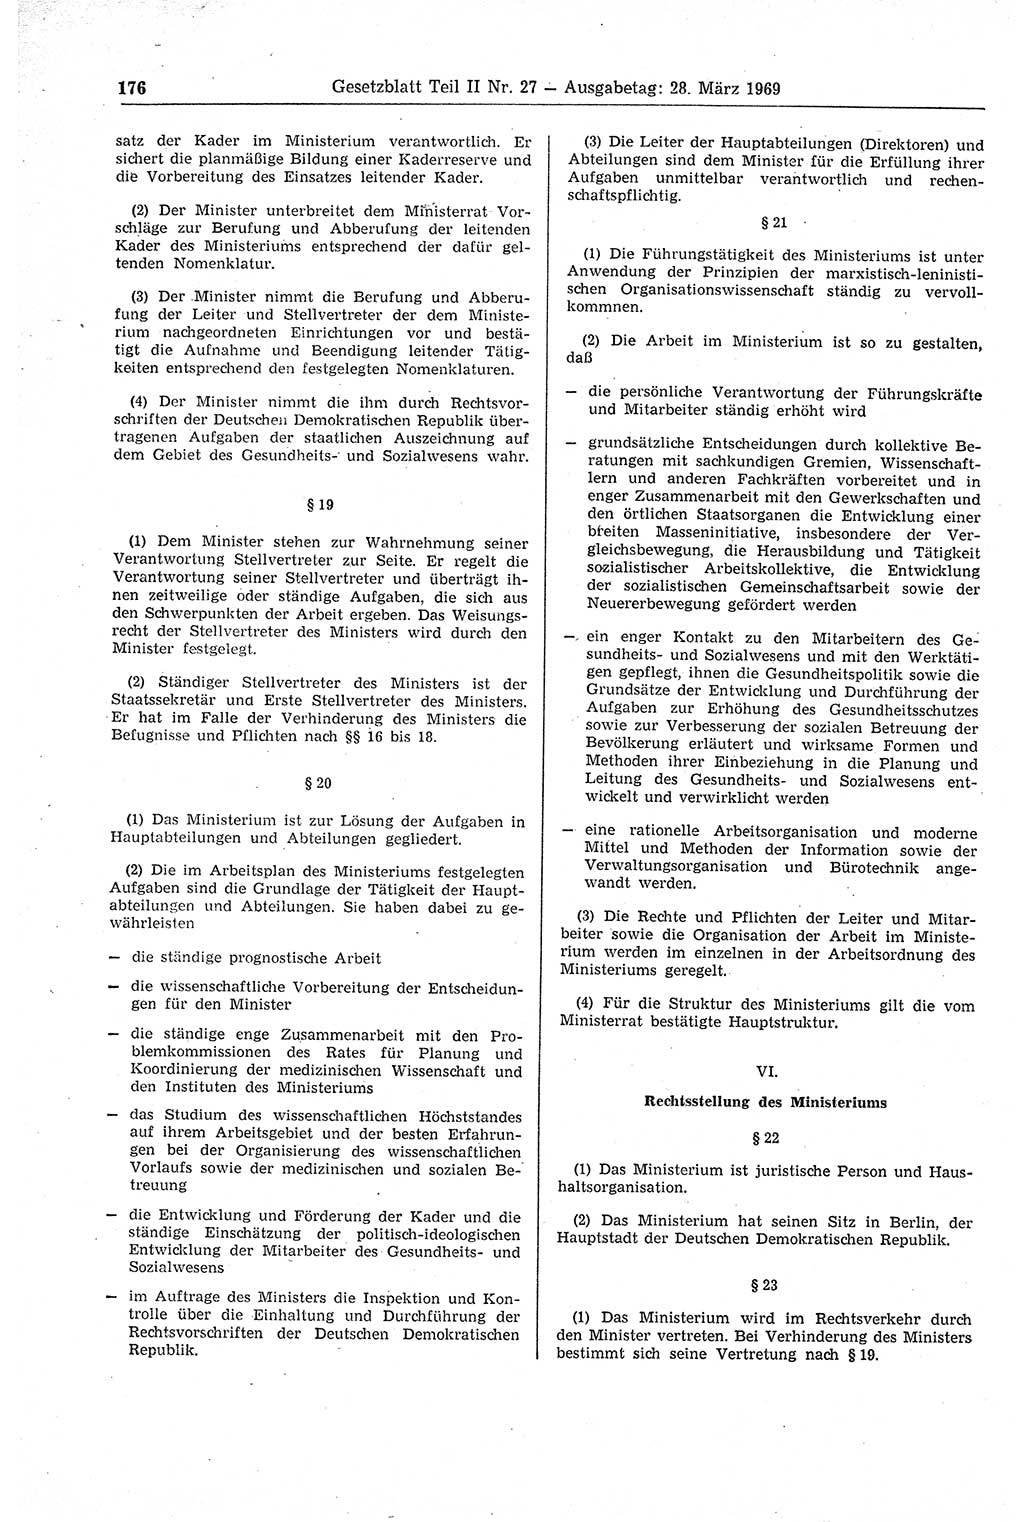 Gesetzblatt (GBl.) der Deutschen Demokratischen Republik (DDR) Teil ⅠⅠ 1969, Seite 176 (GBl. DDR ⅠⅠ 1969, S. 176)